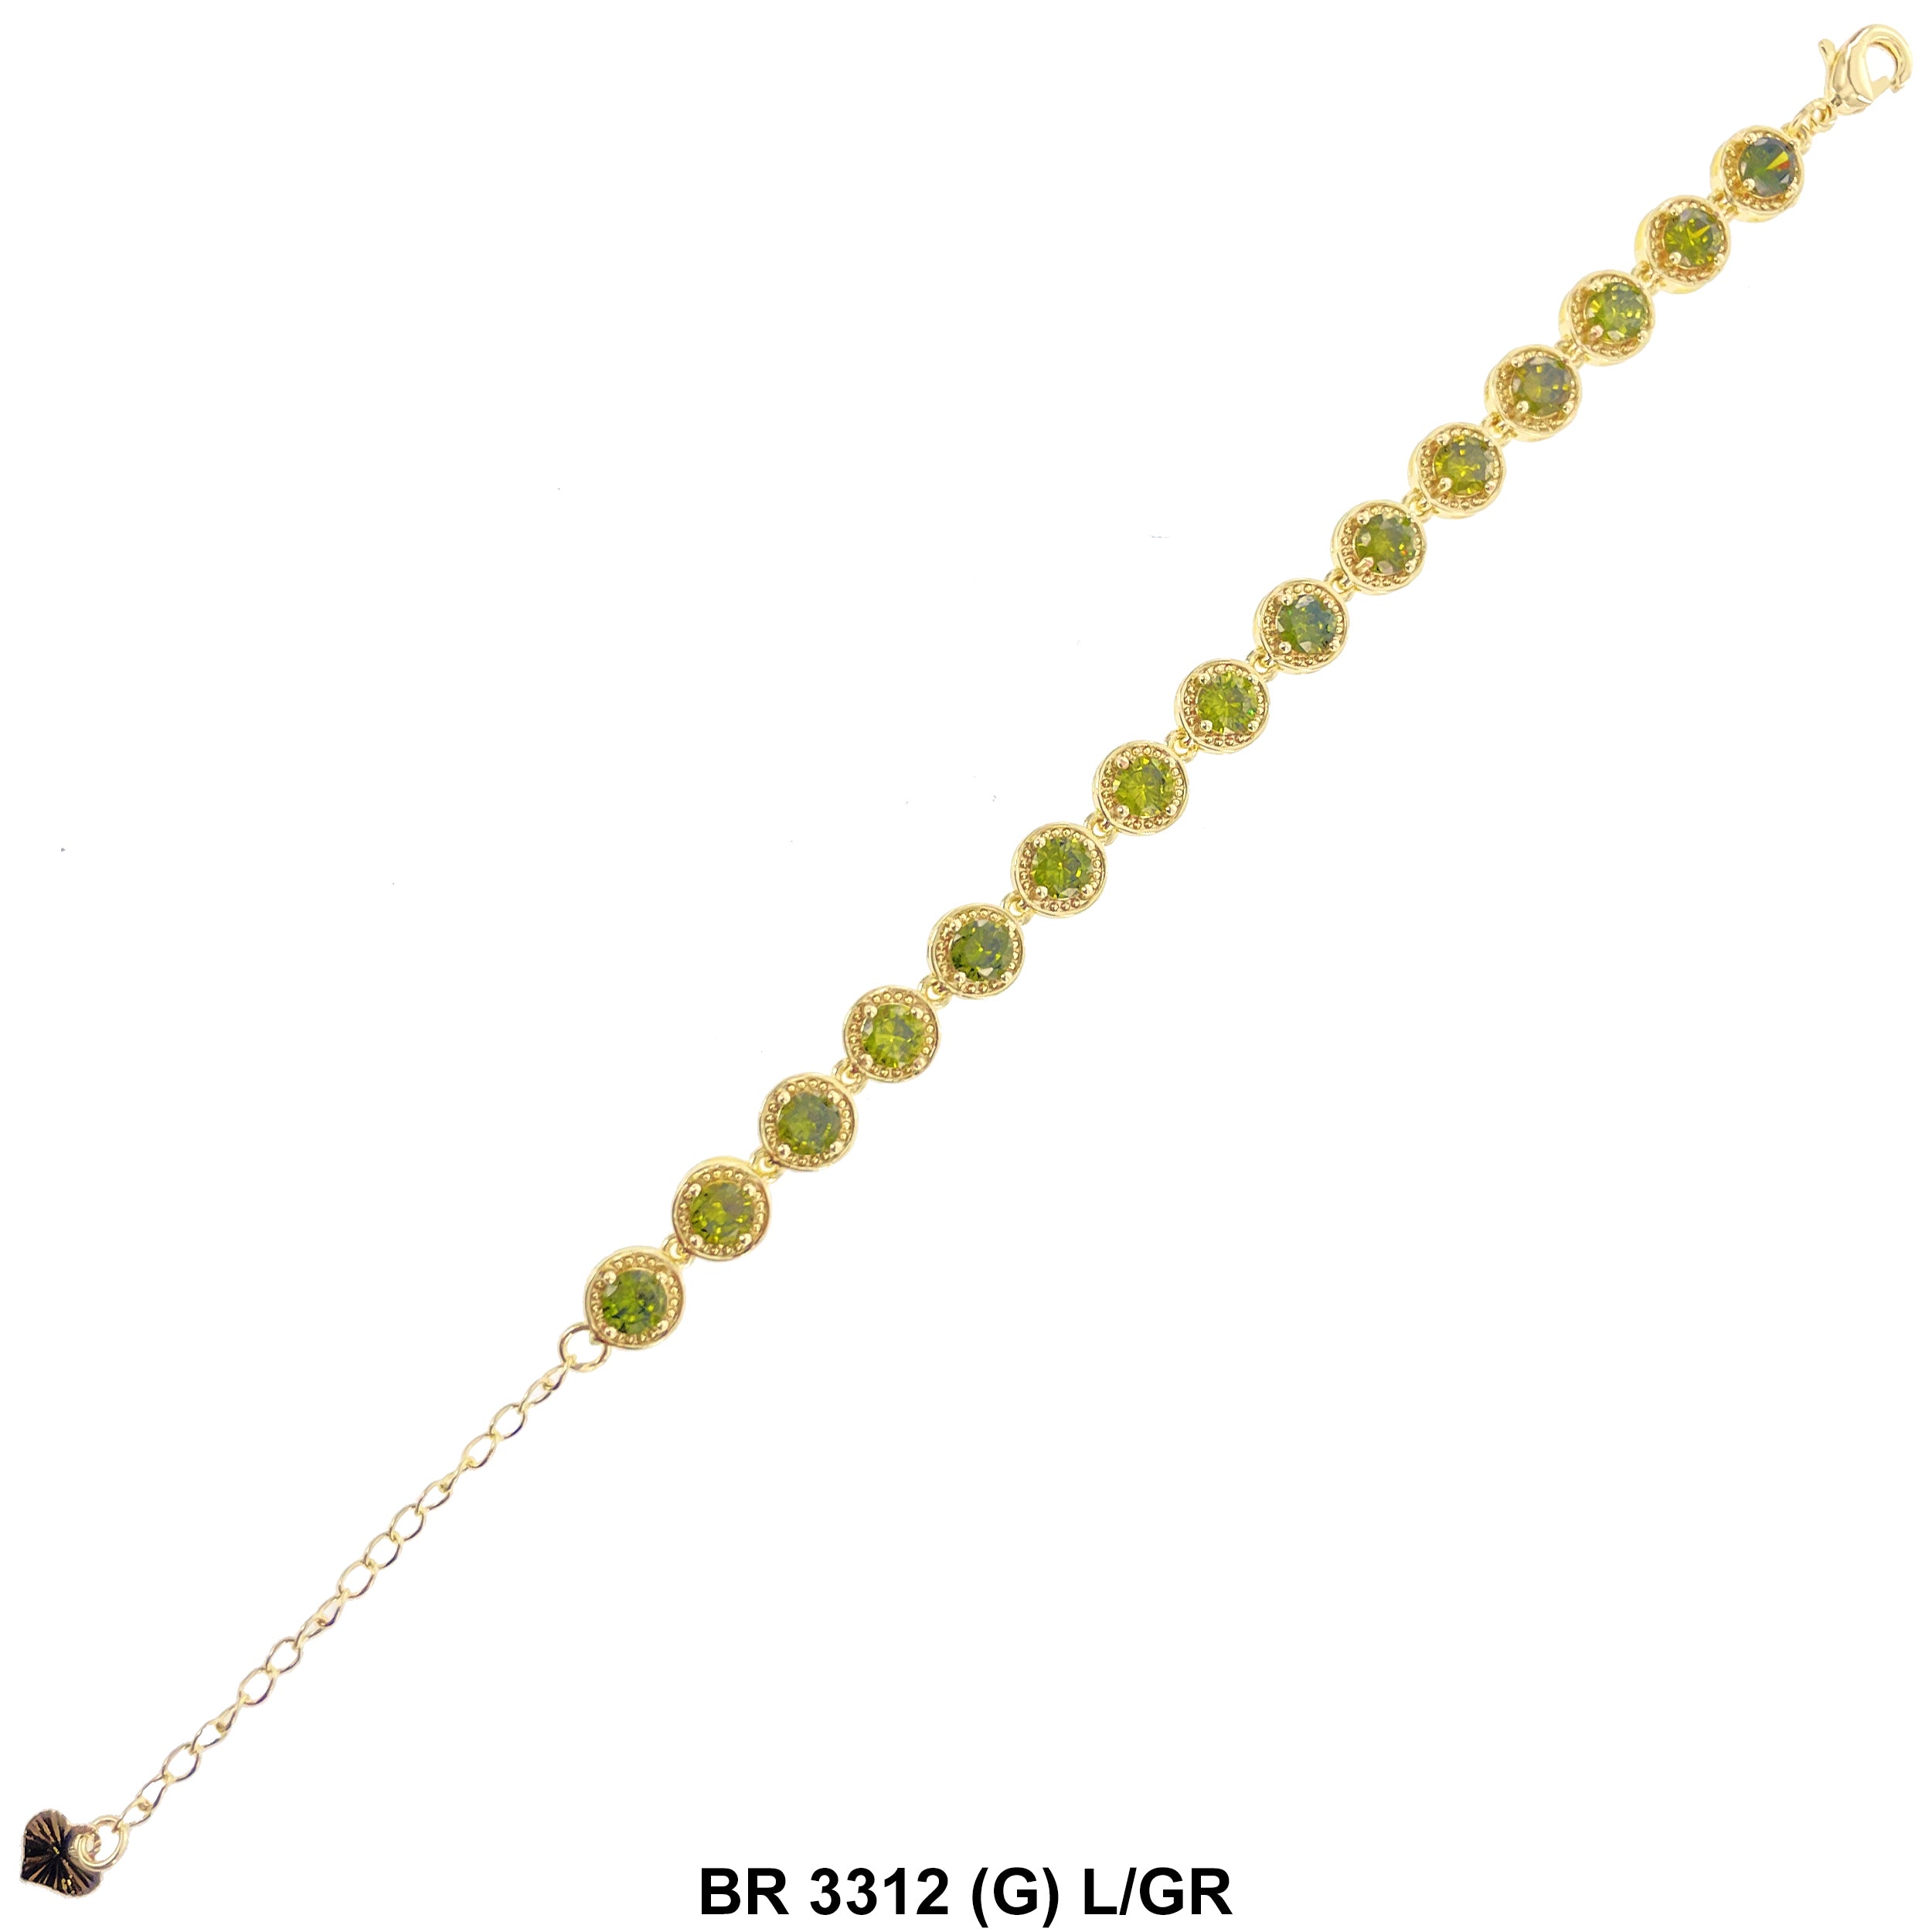 Cubic Zirconia Tennis Bracelet BR 3312 (G) L/GR